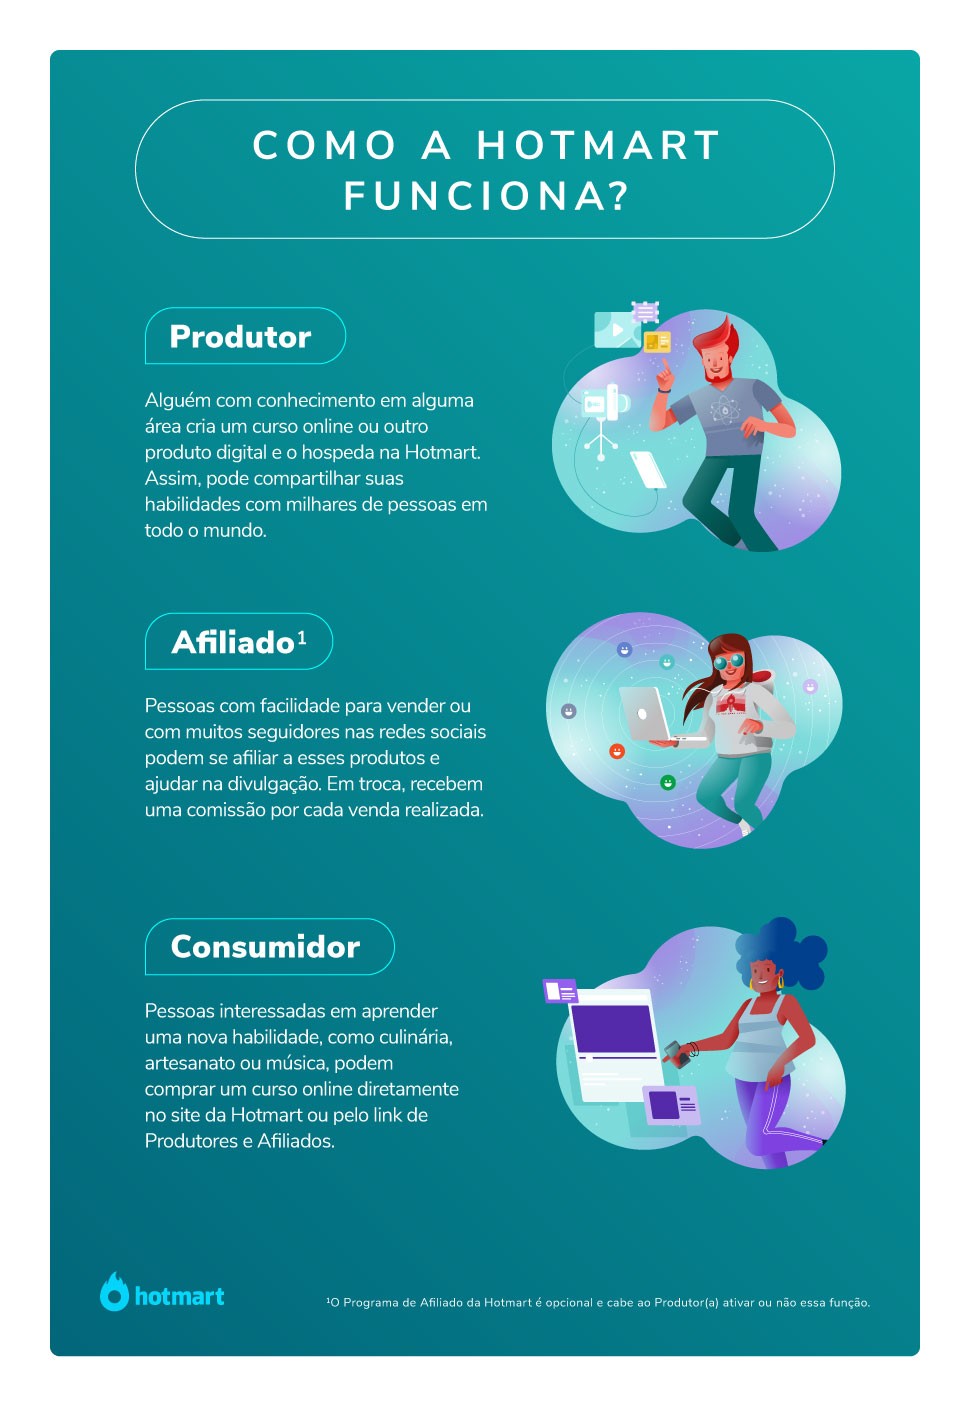 Infográfico com a descrição do papel de Produtor, Afiliado e Consumidor no funcionamento da Hotmart